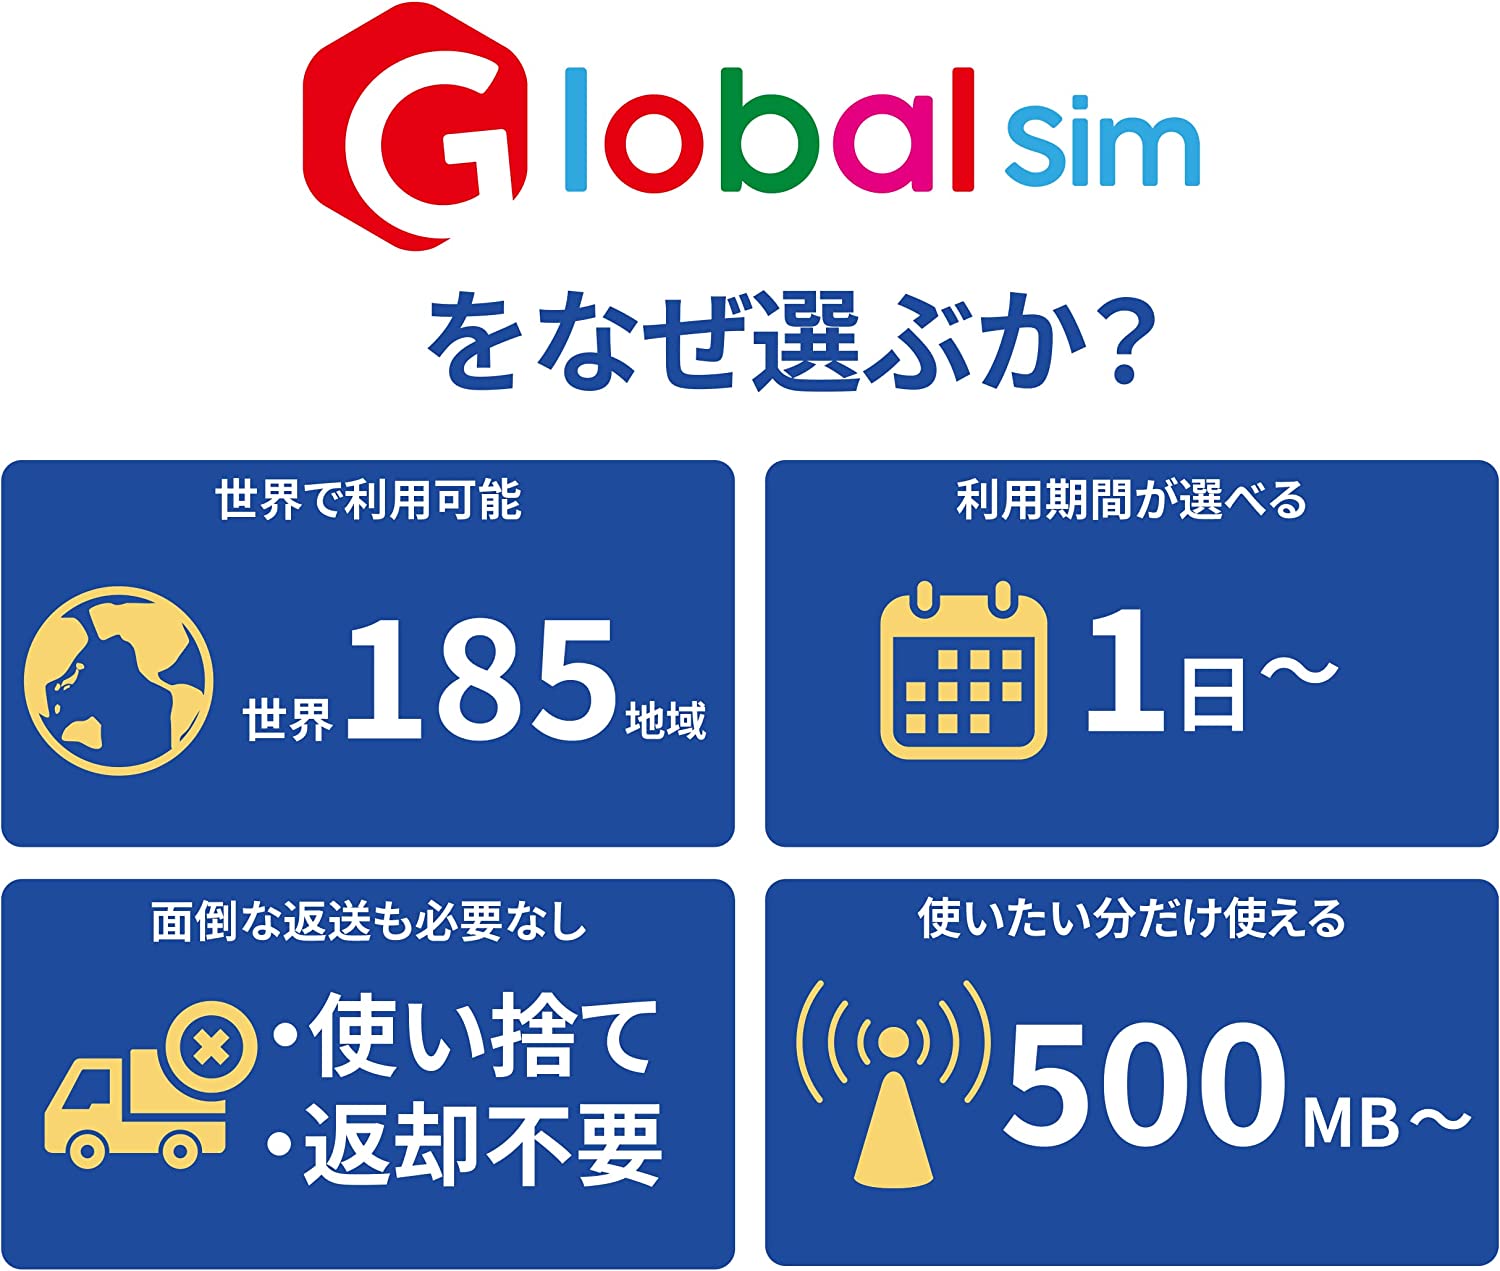 【GoJapanMobile】GLOBALSIMベトナム4日間データ無制限(2GB/日高速）（容量を使い切っても利用期間内は最大384kbps）/データ通信専用/シムフリー端末のみ対応/追加費用なし・契約不要